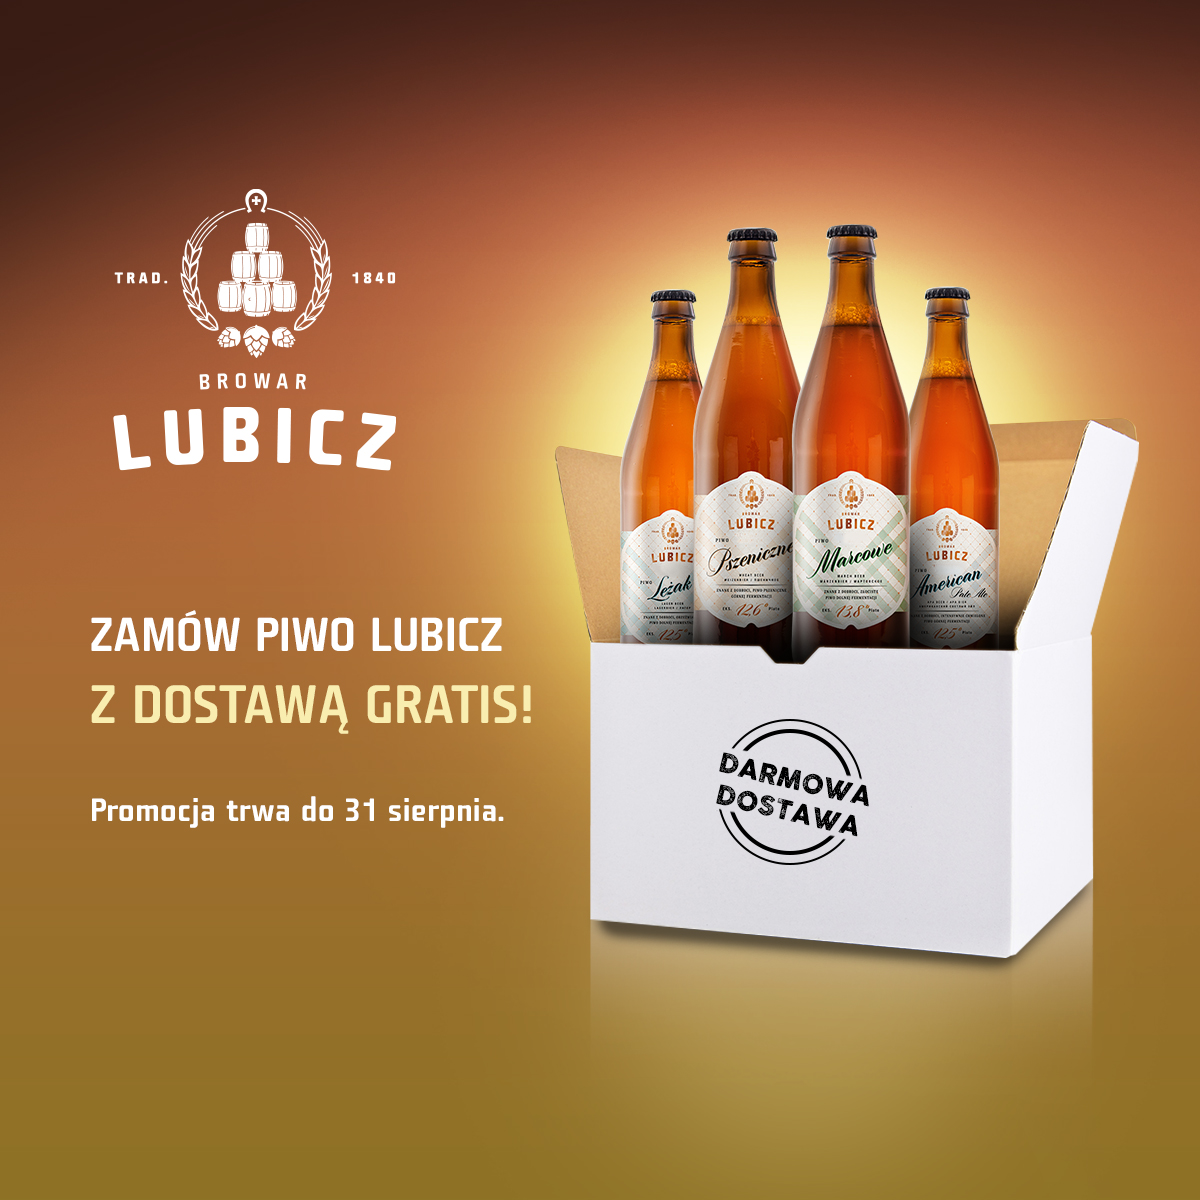 Browar Lubicz dostępny już w całej Polsce! Dostawa gratis do 31 sierpnia.